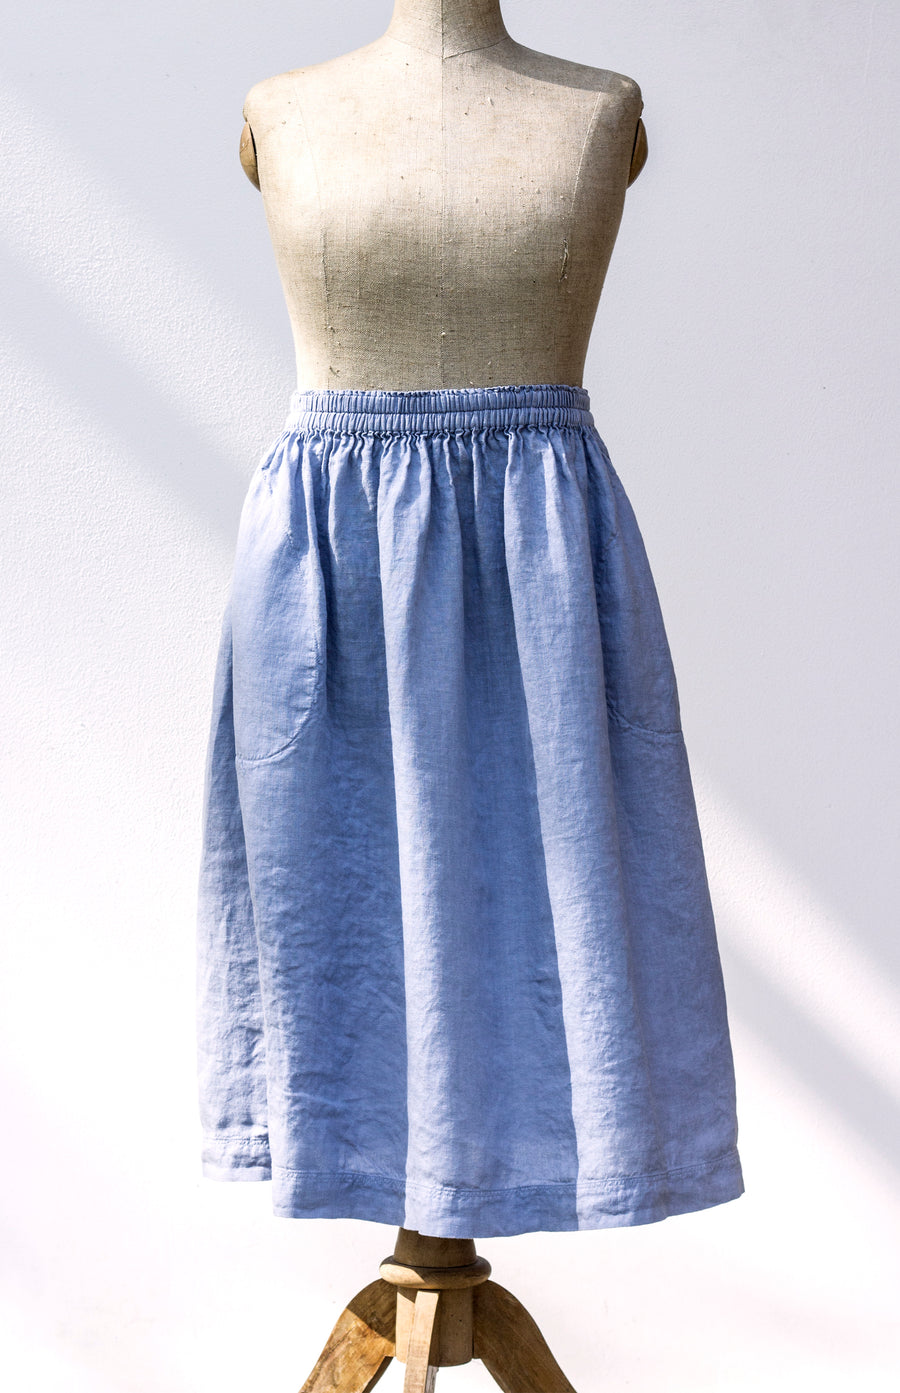 Extra soft ZEN skirt in Kentucky Blue shade